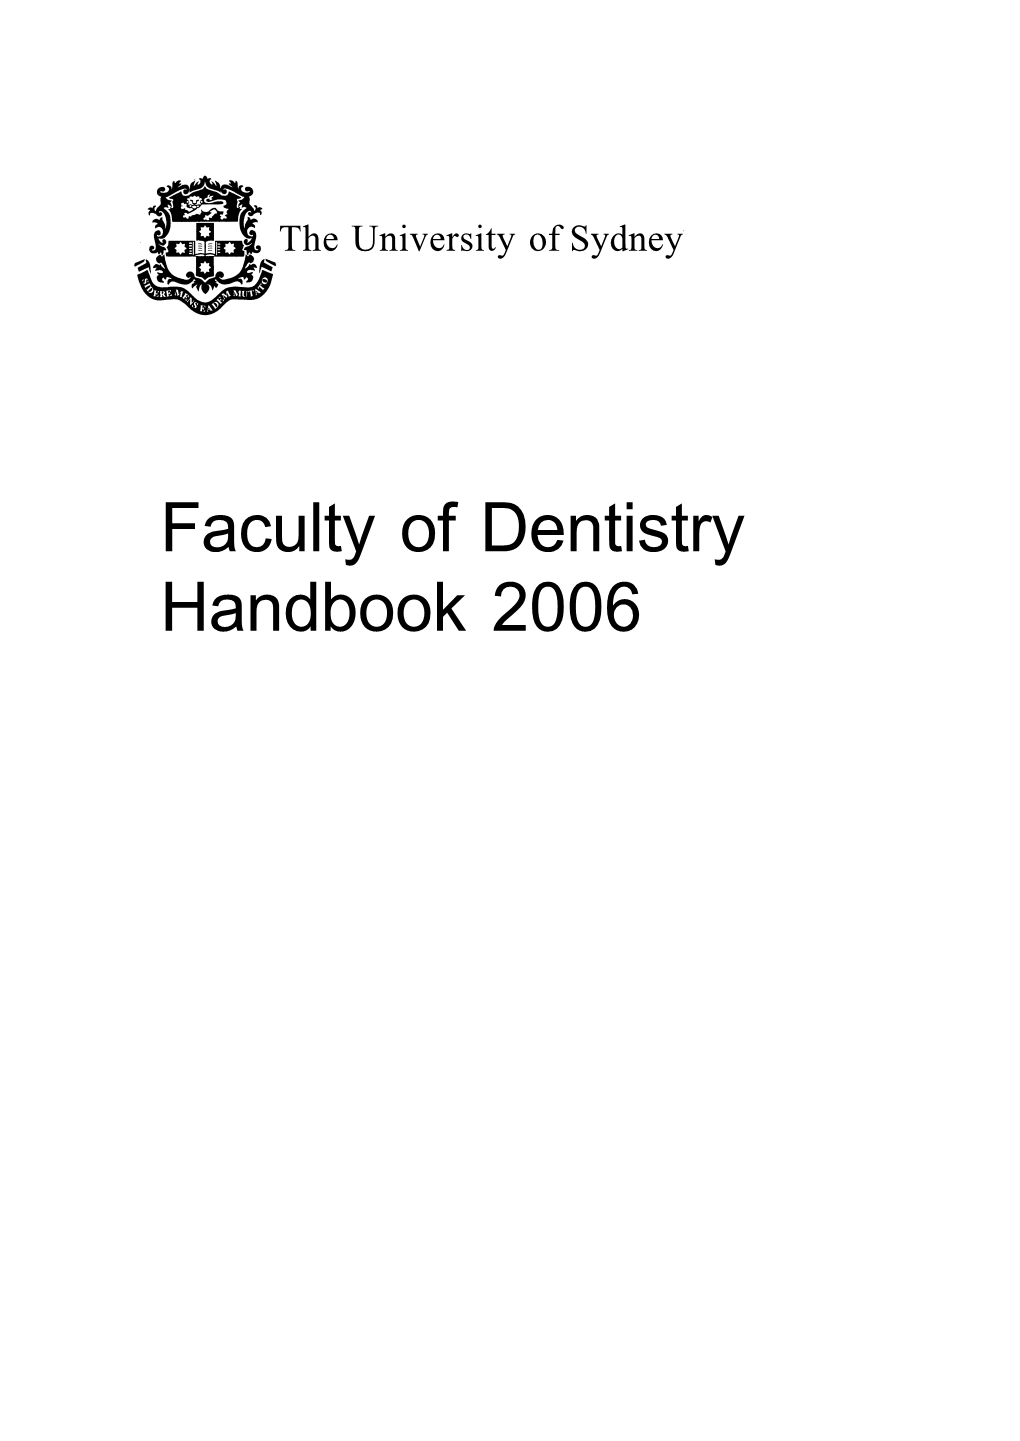 Faculty of Dentistry Handbook 2006 University Dates